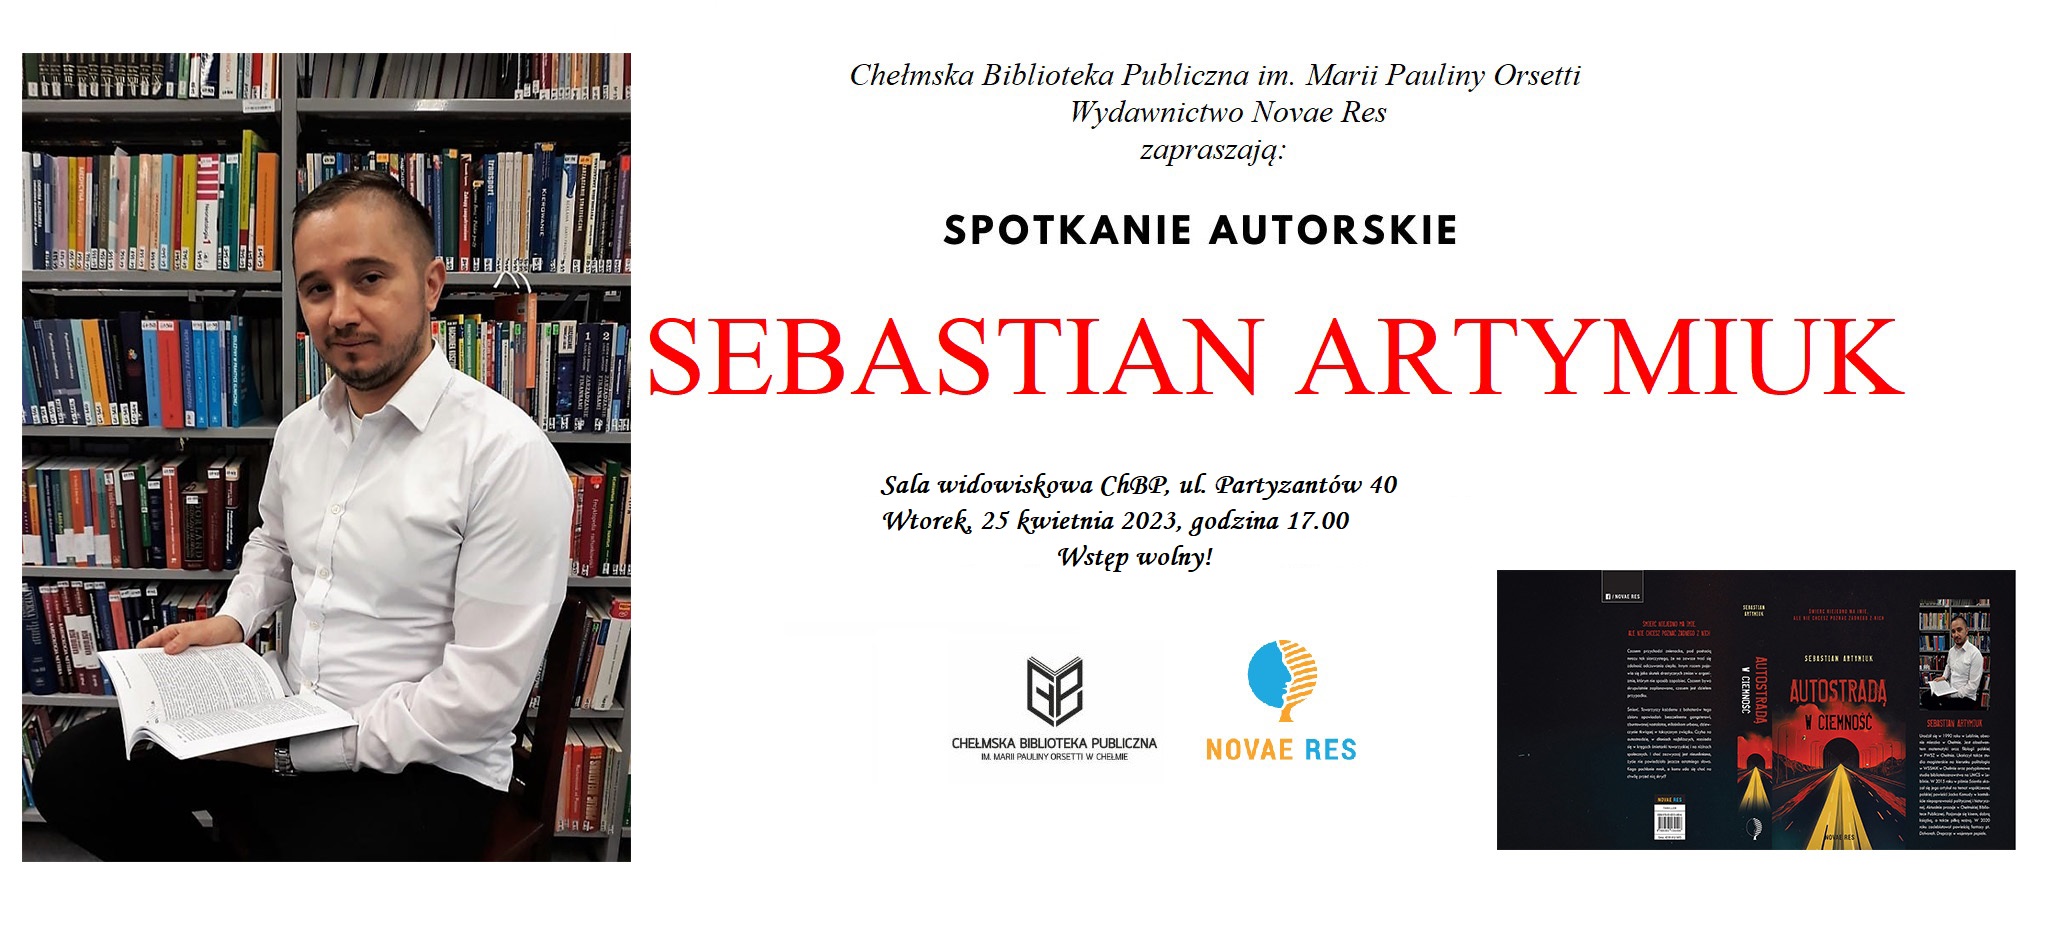 Sebastian Artymiuk w Chełmskiej Bibliotece, autor książki pt. "Autostradą w ciemność" 25 kwietnia o godz. 17.00 w sali widowiskowej ChBP